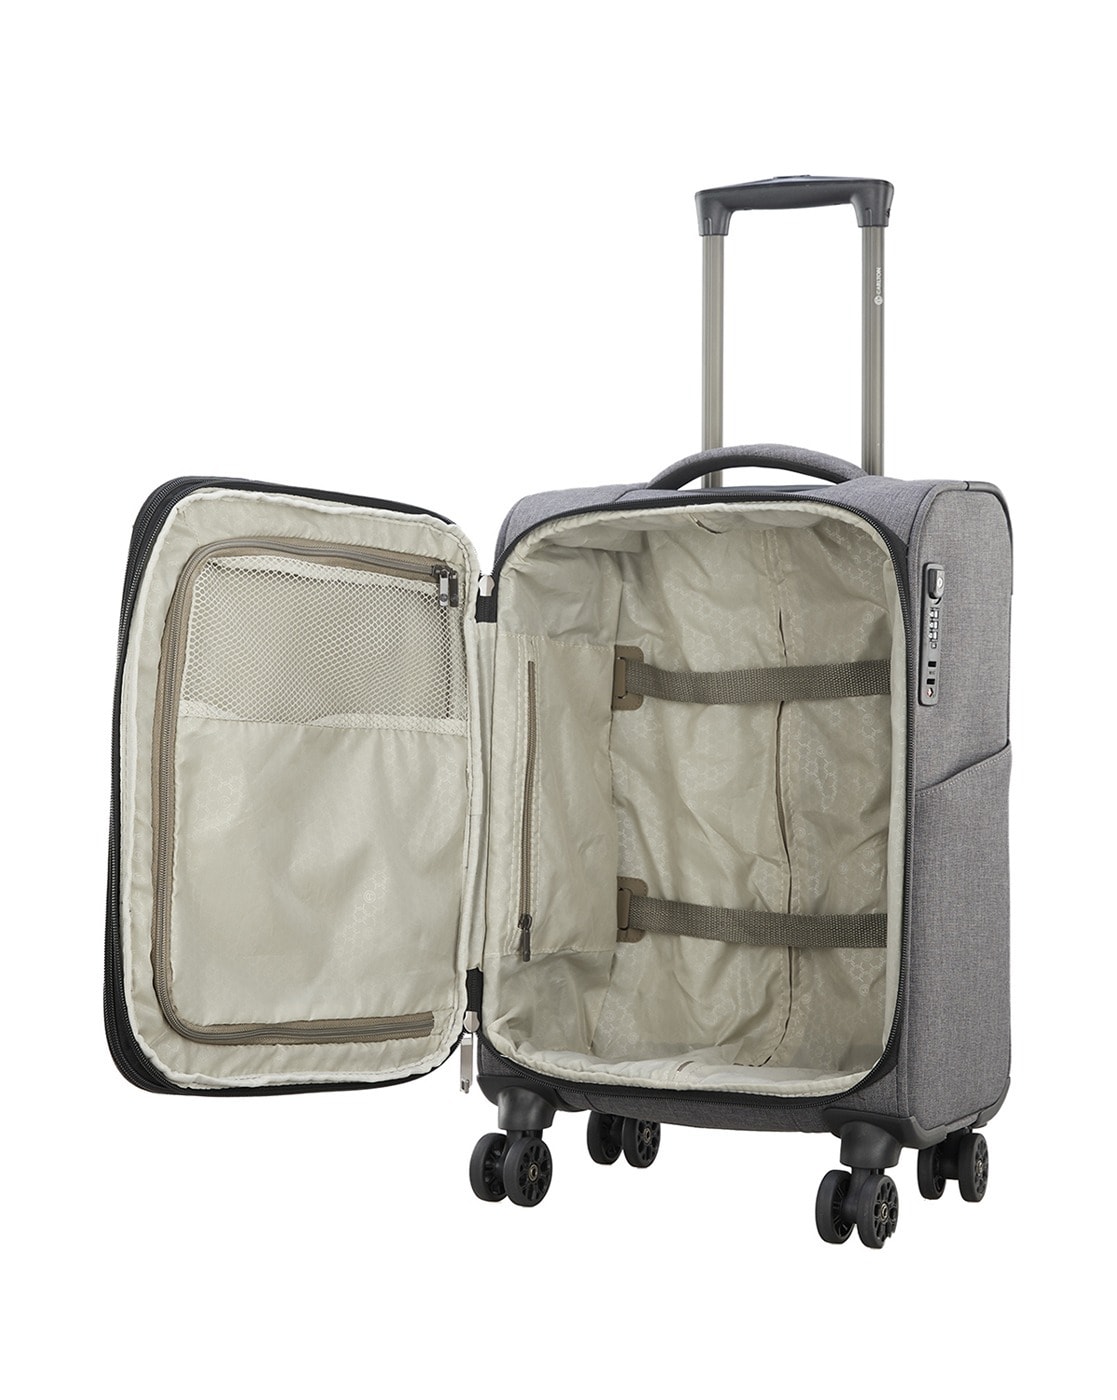 Luggage Carlton Omega Expandable Holdall Suitcase Khaki Lu… | Flickr